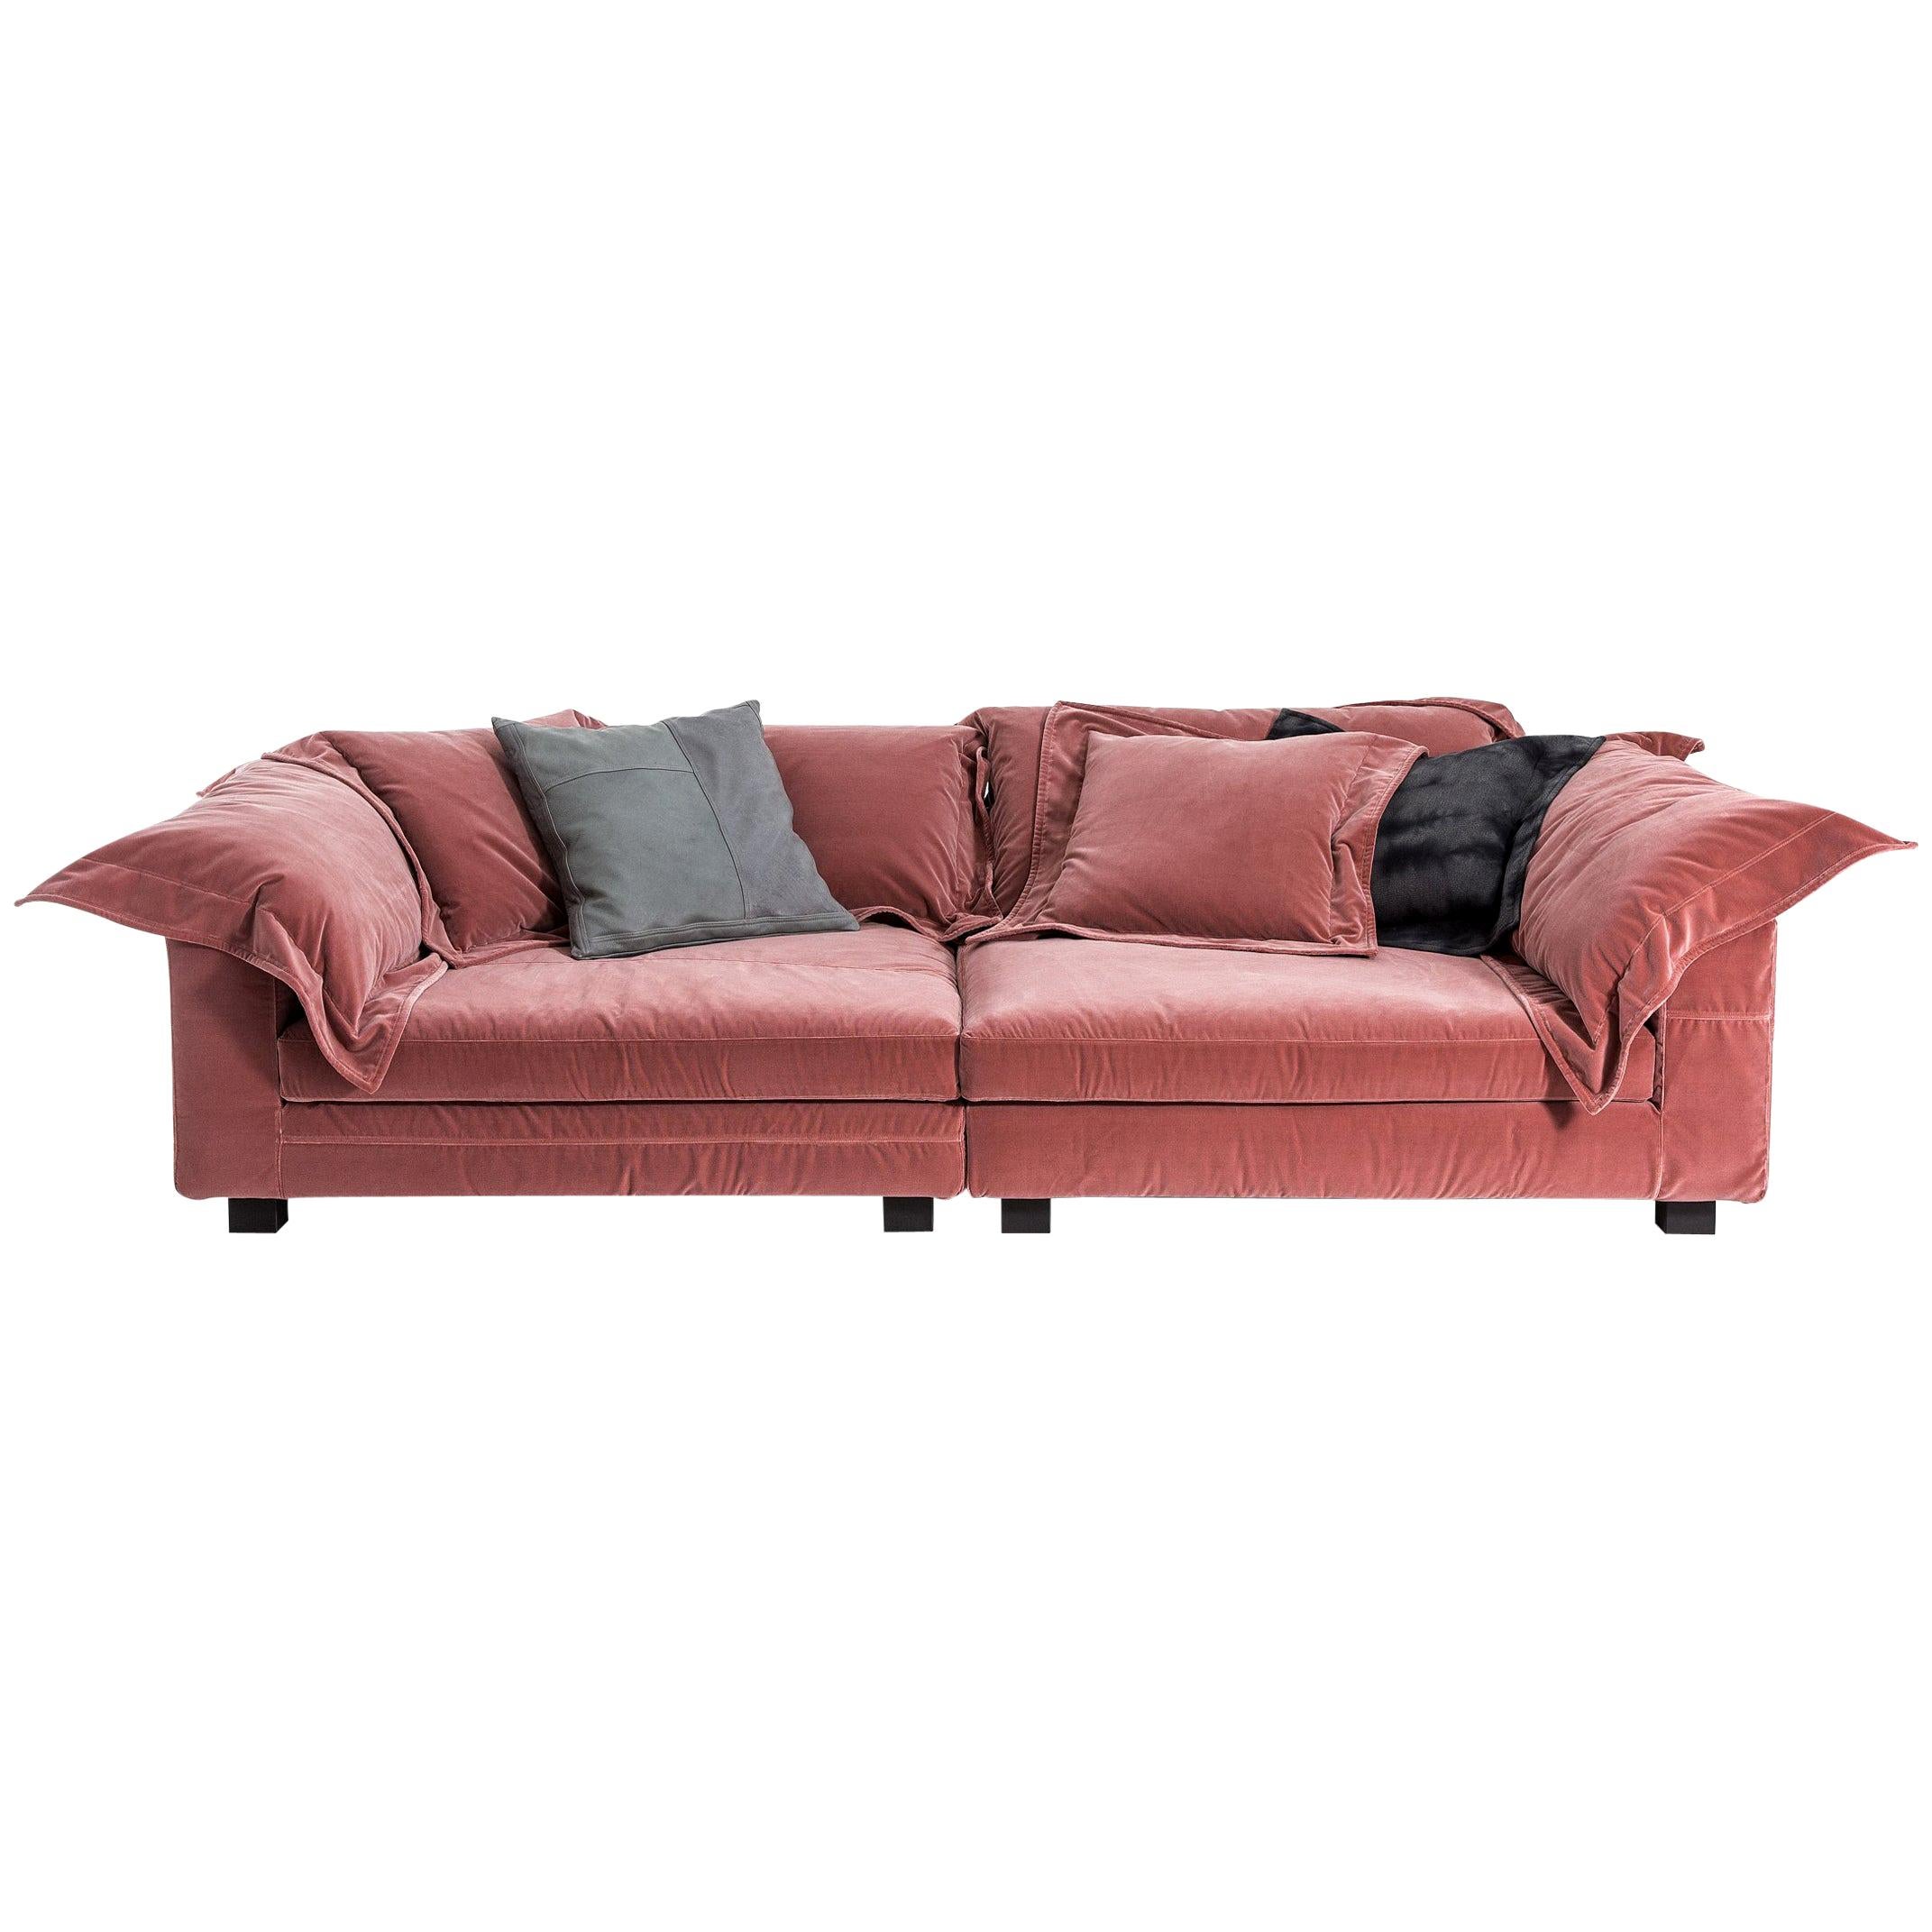 "Nebula Nine" Cotton Linen Leather and Velvet Covered Sofa by Moroso & Diesel